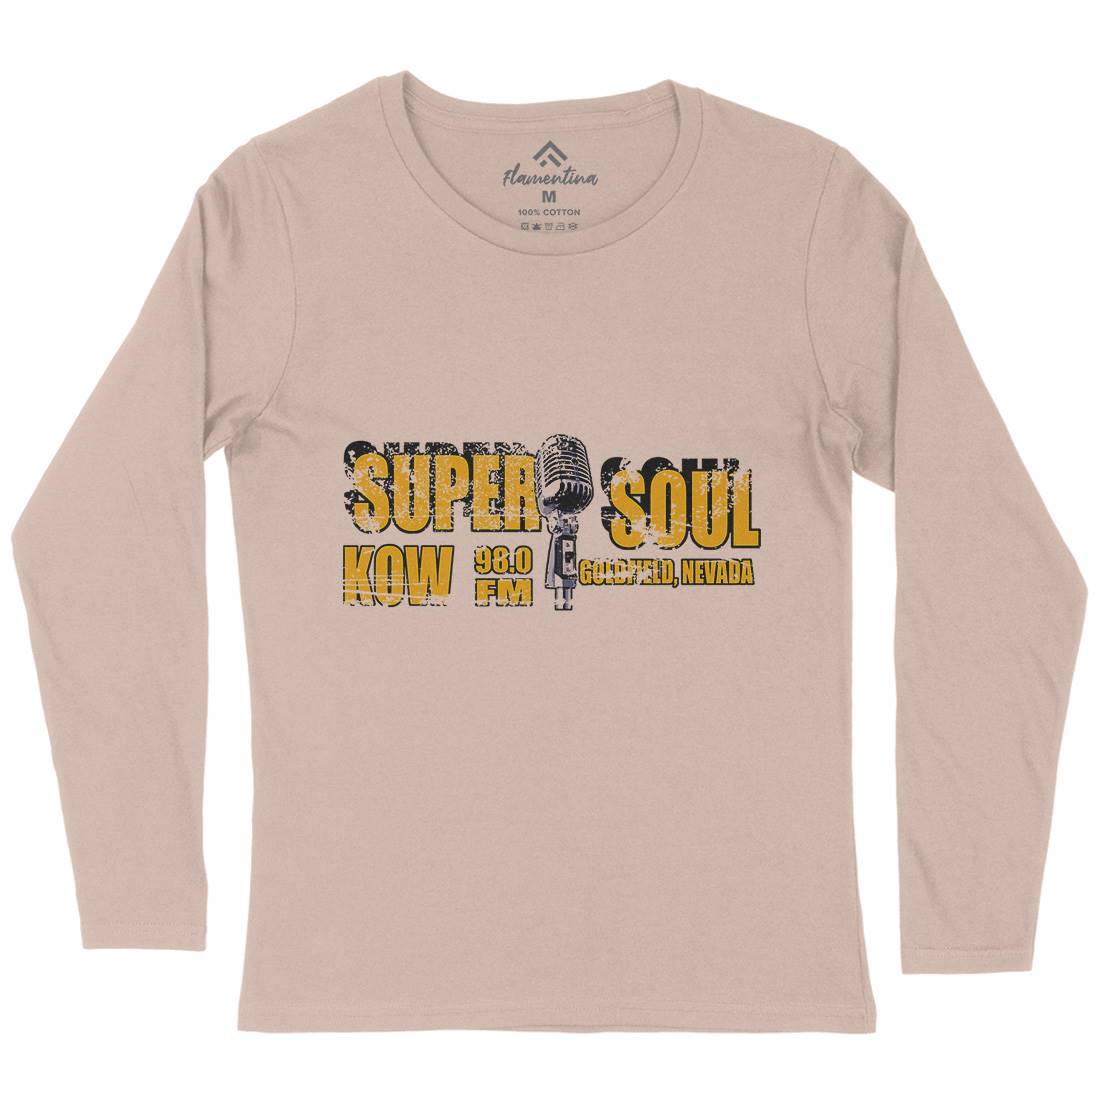 Super Soul Womens Long Sleeve T-Shirt Music D392